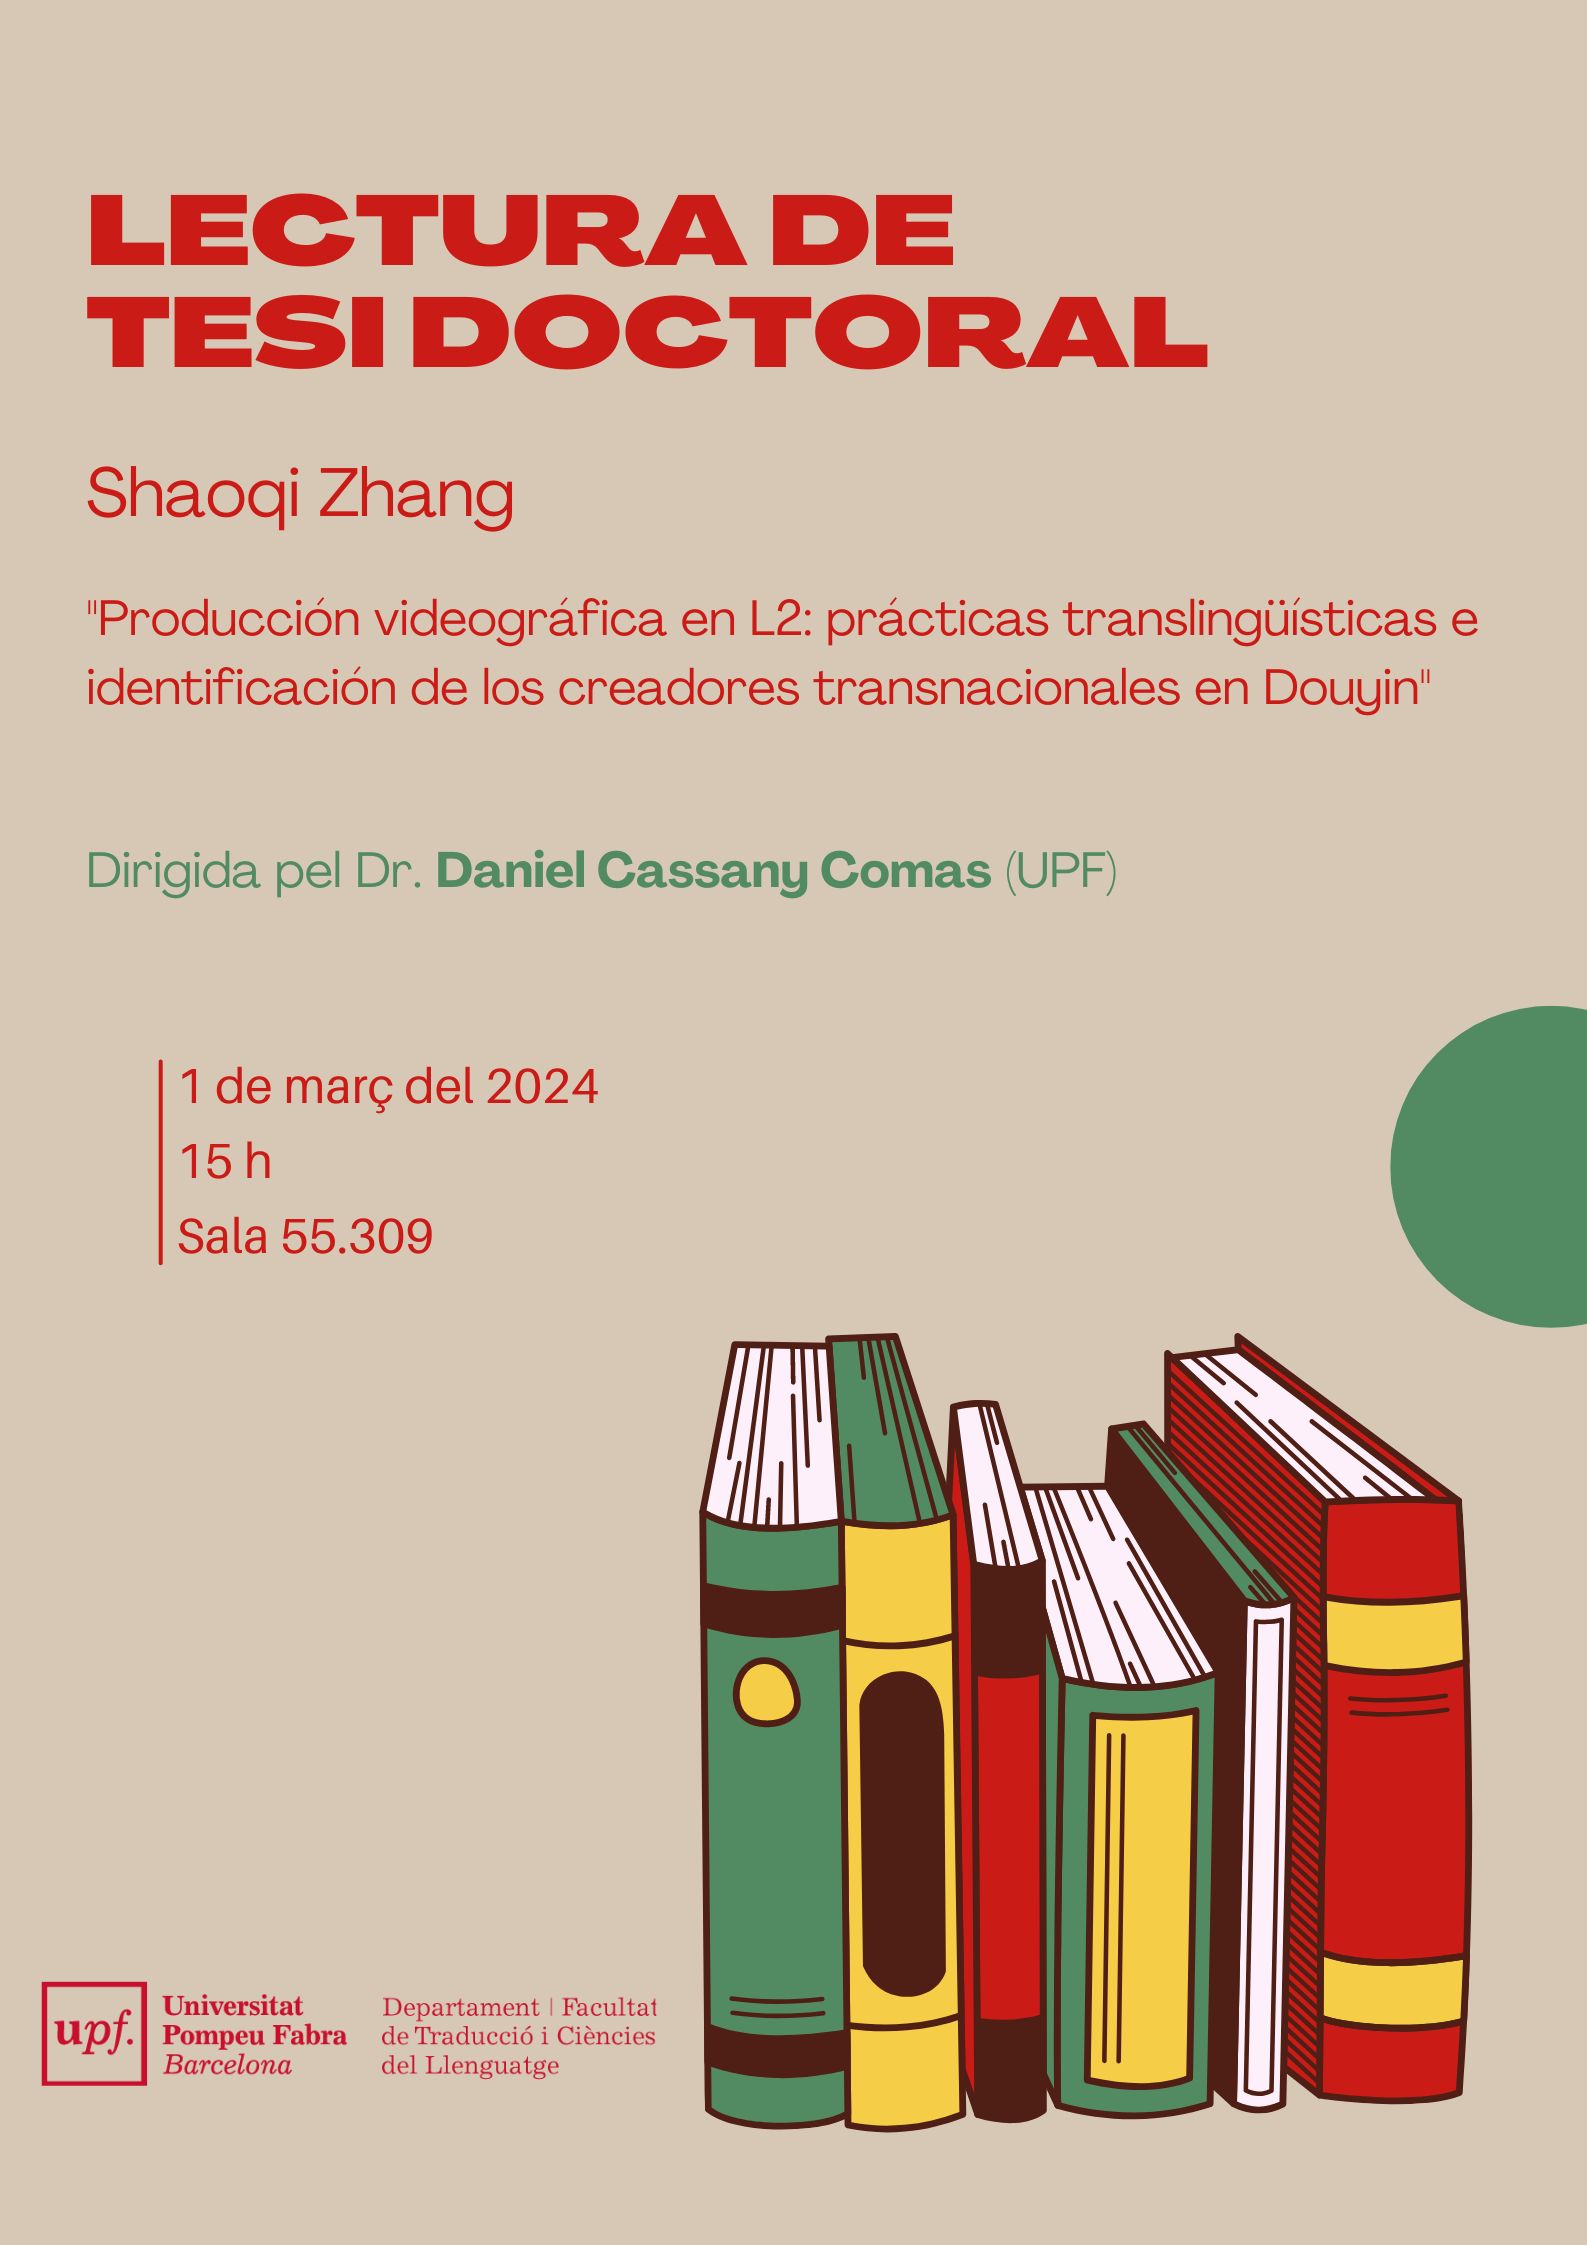 01/03/2024 Lectura de la tesi doctoral de Shaoqi Zhang, a les 15.00 hores